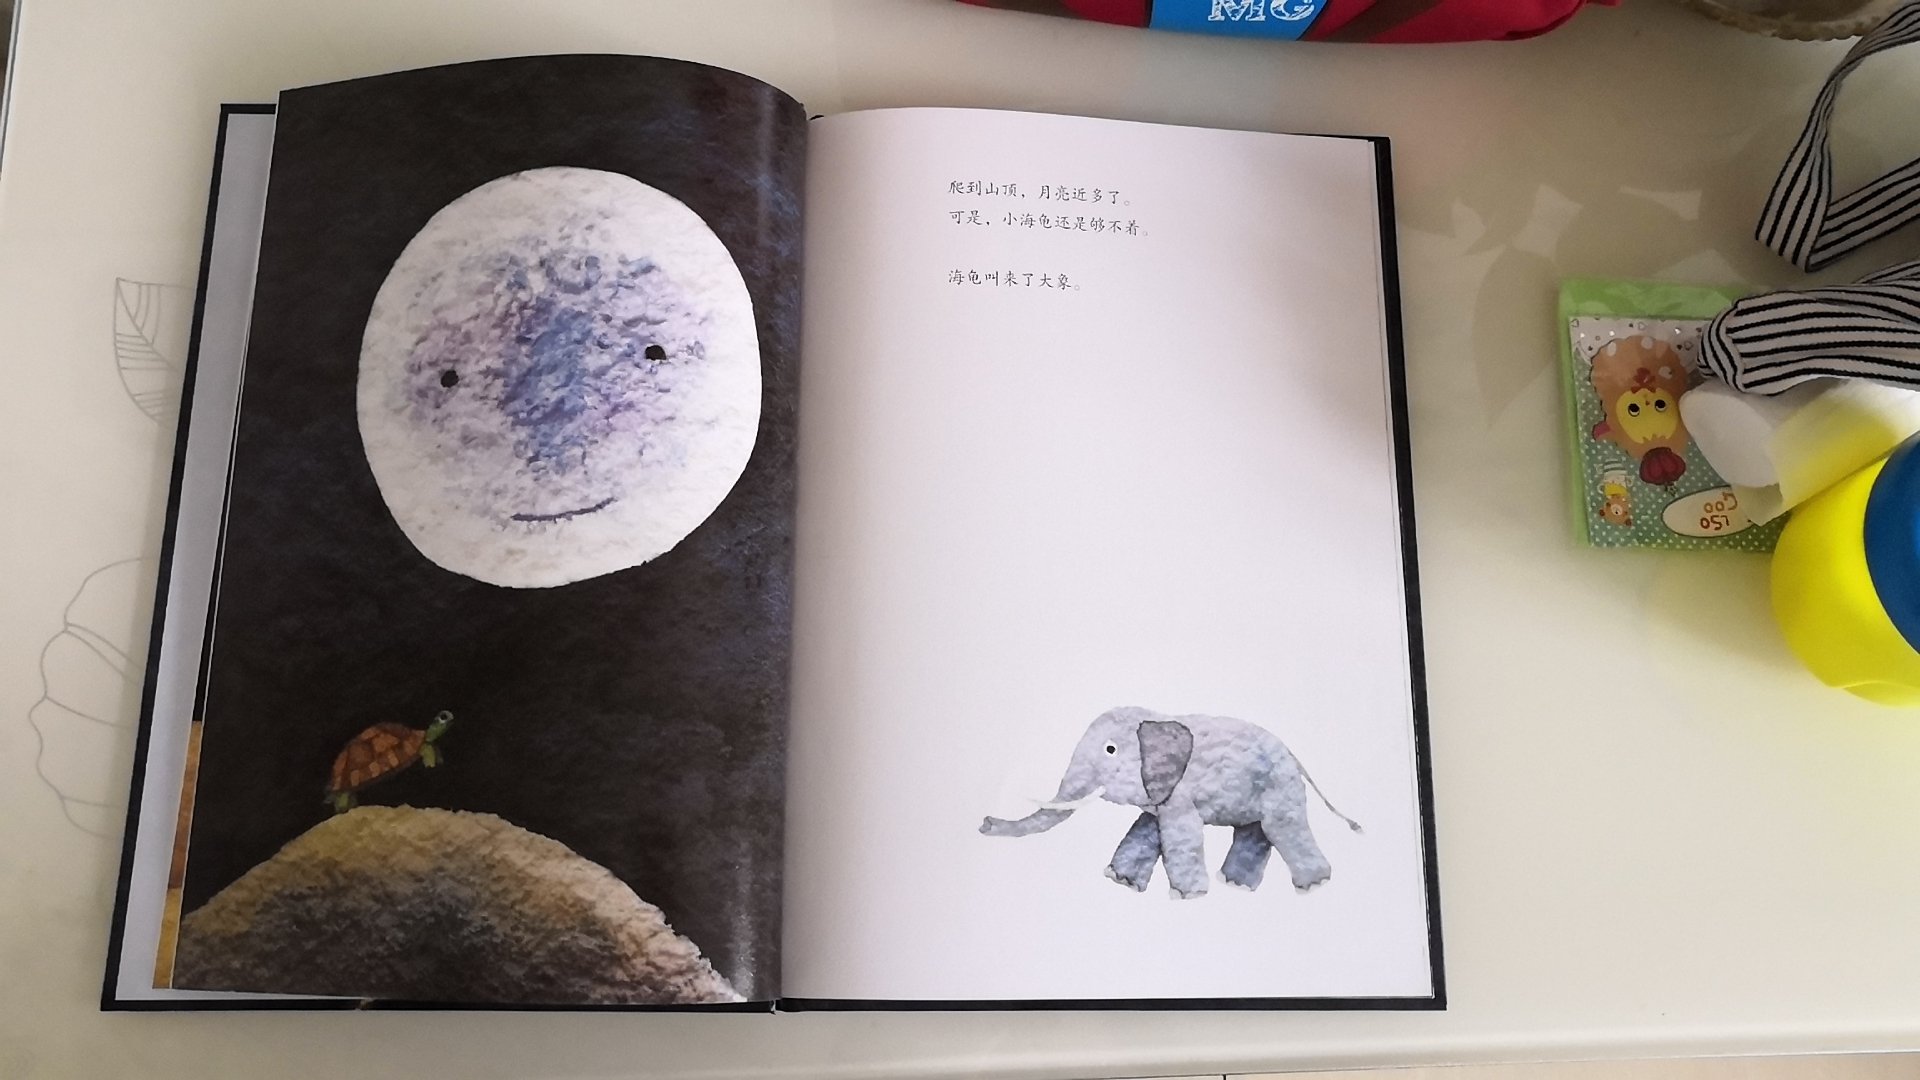 书很精致漂亮，月亮画的像薯片一样。